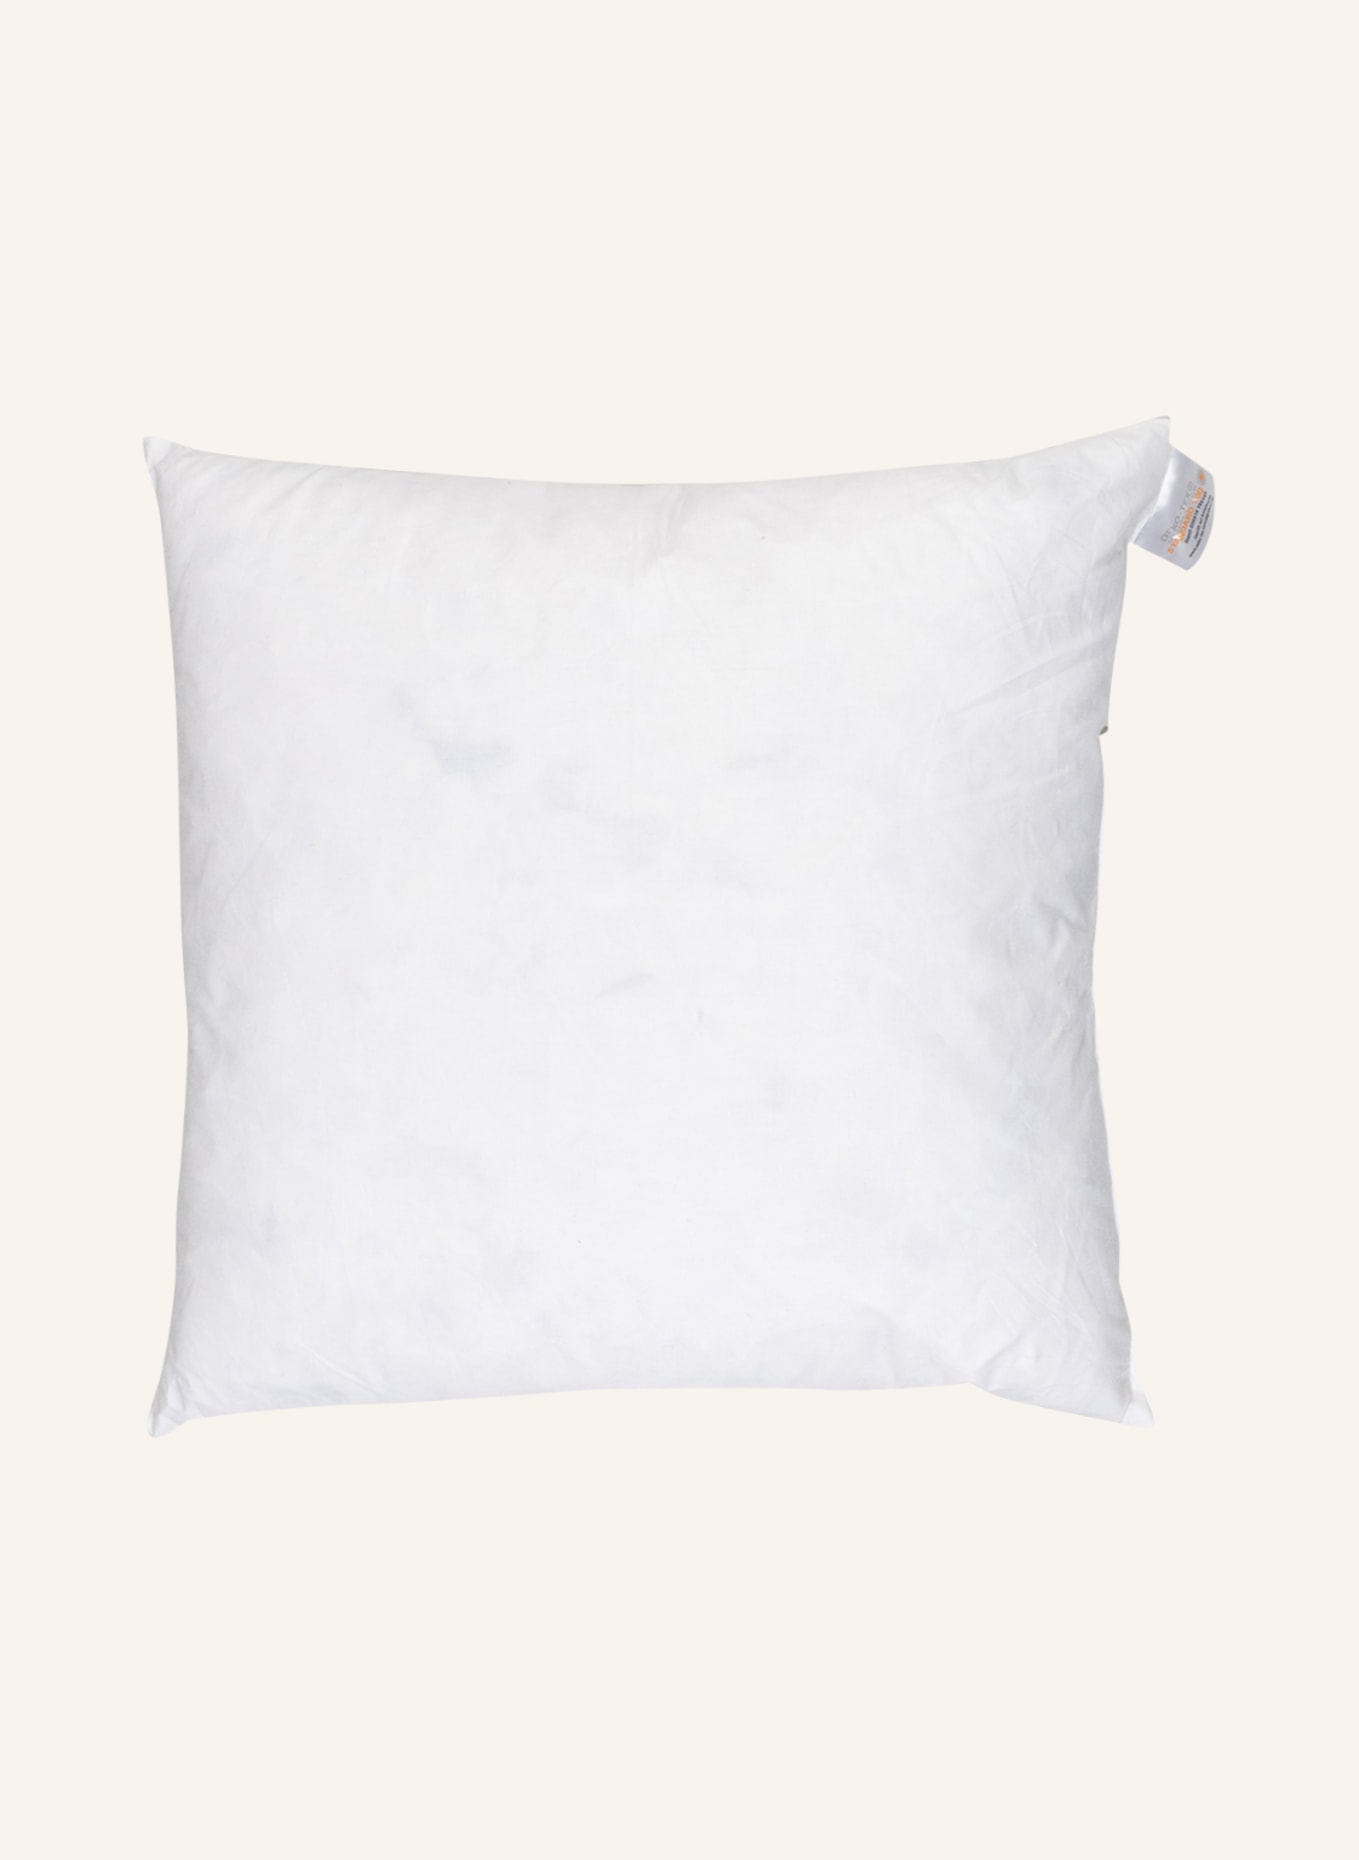 EB HOME Sofa cushion filling, Color: WHITE (Image 1)